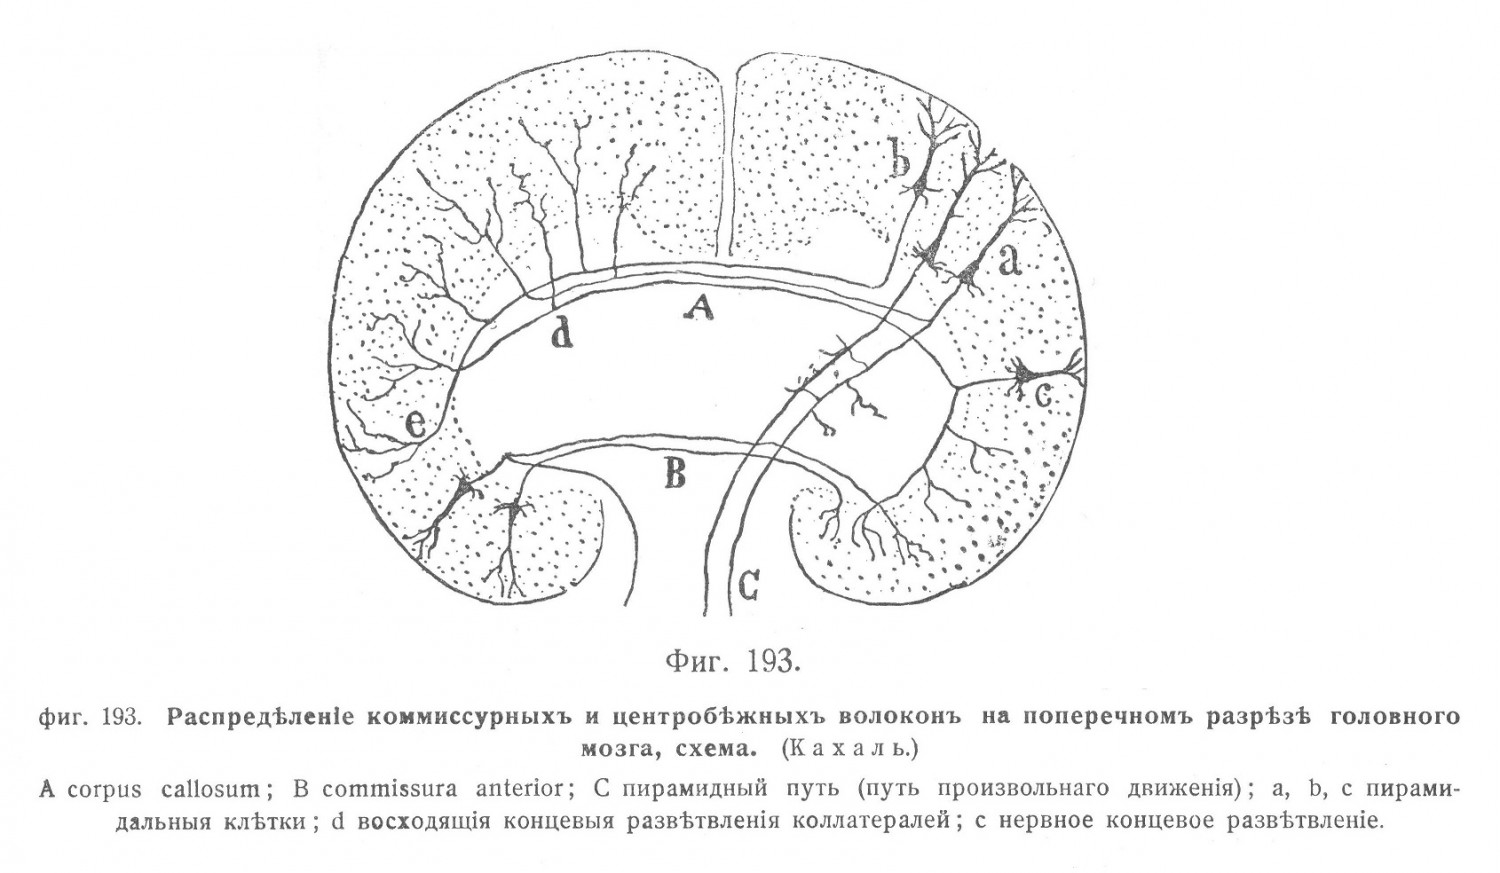 Распредѣленіе коммиссурныхъ и центробѣжныхъ волоконъ на поперечномъ разрѣзѣ головного мозга, схема